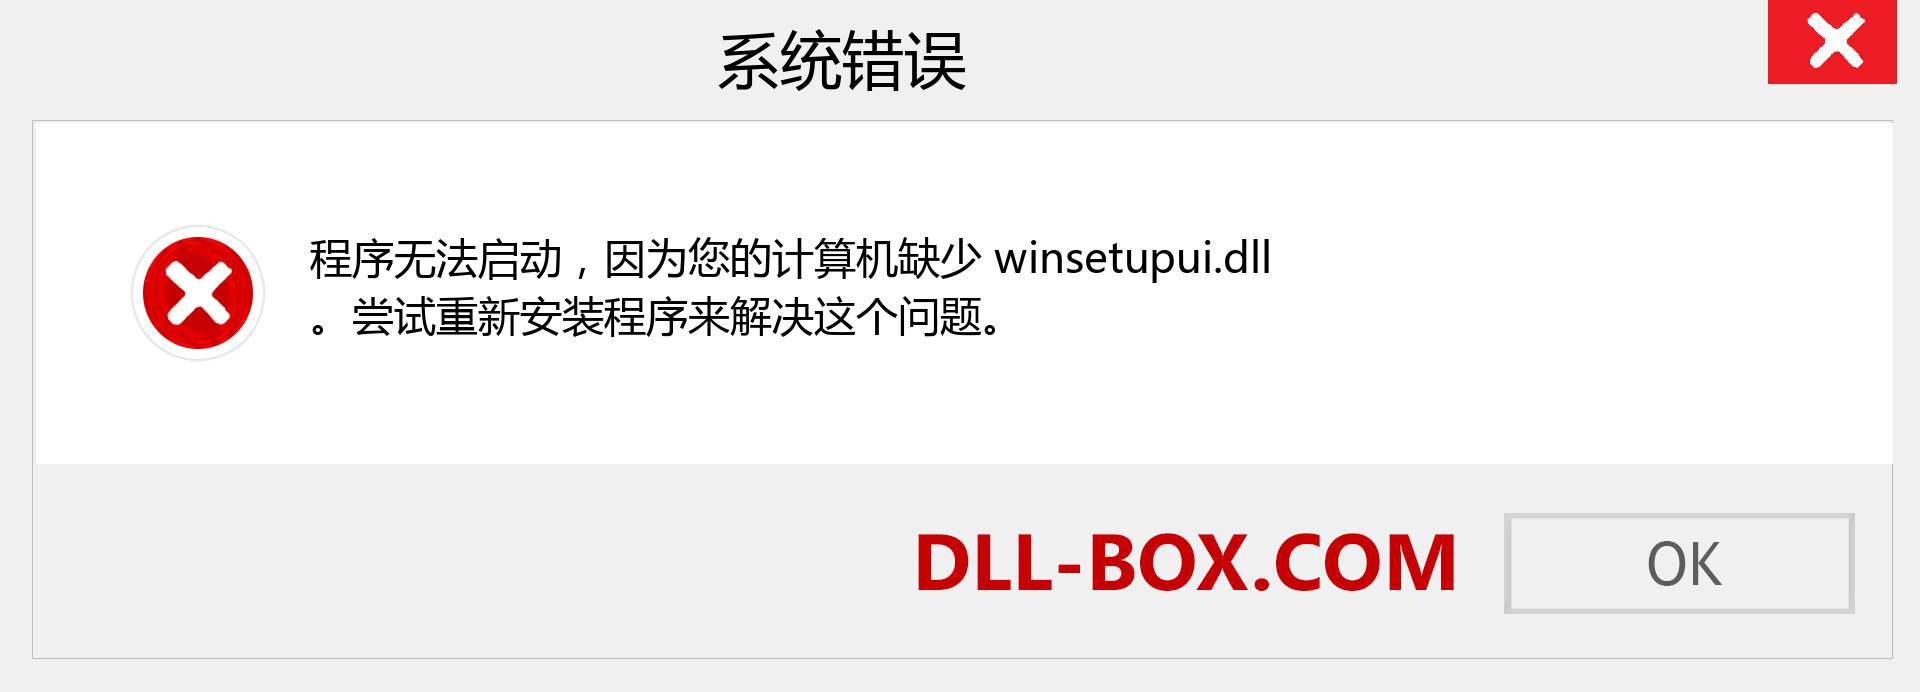 winsetupui.dll 文件丢失？。 适用于 Windows 7、8、10 的下载 - 修复 Windows、照片、图像上的 winsetupui dll 丢失错误